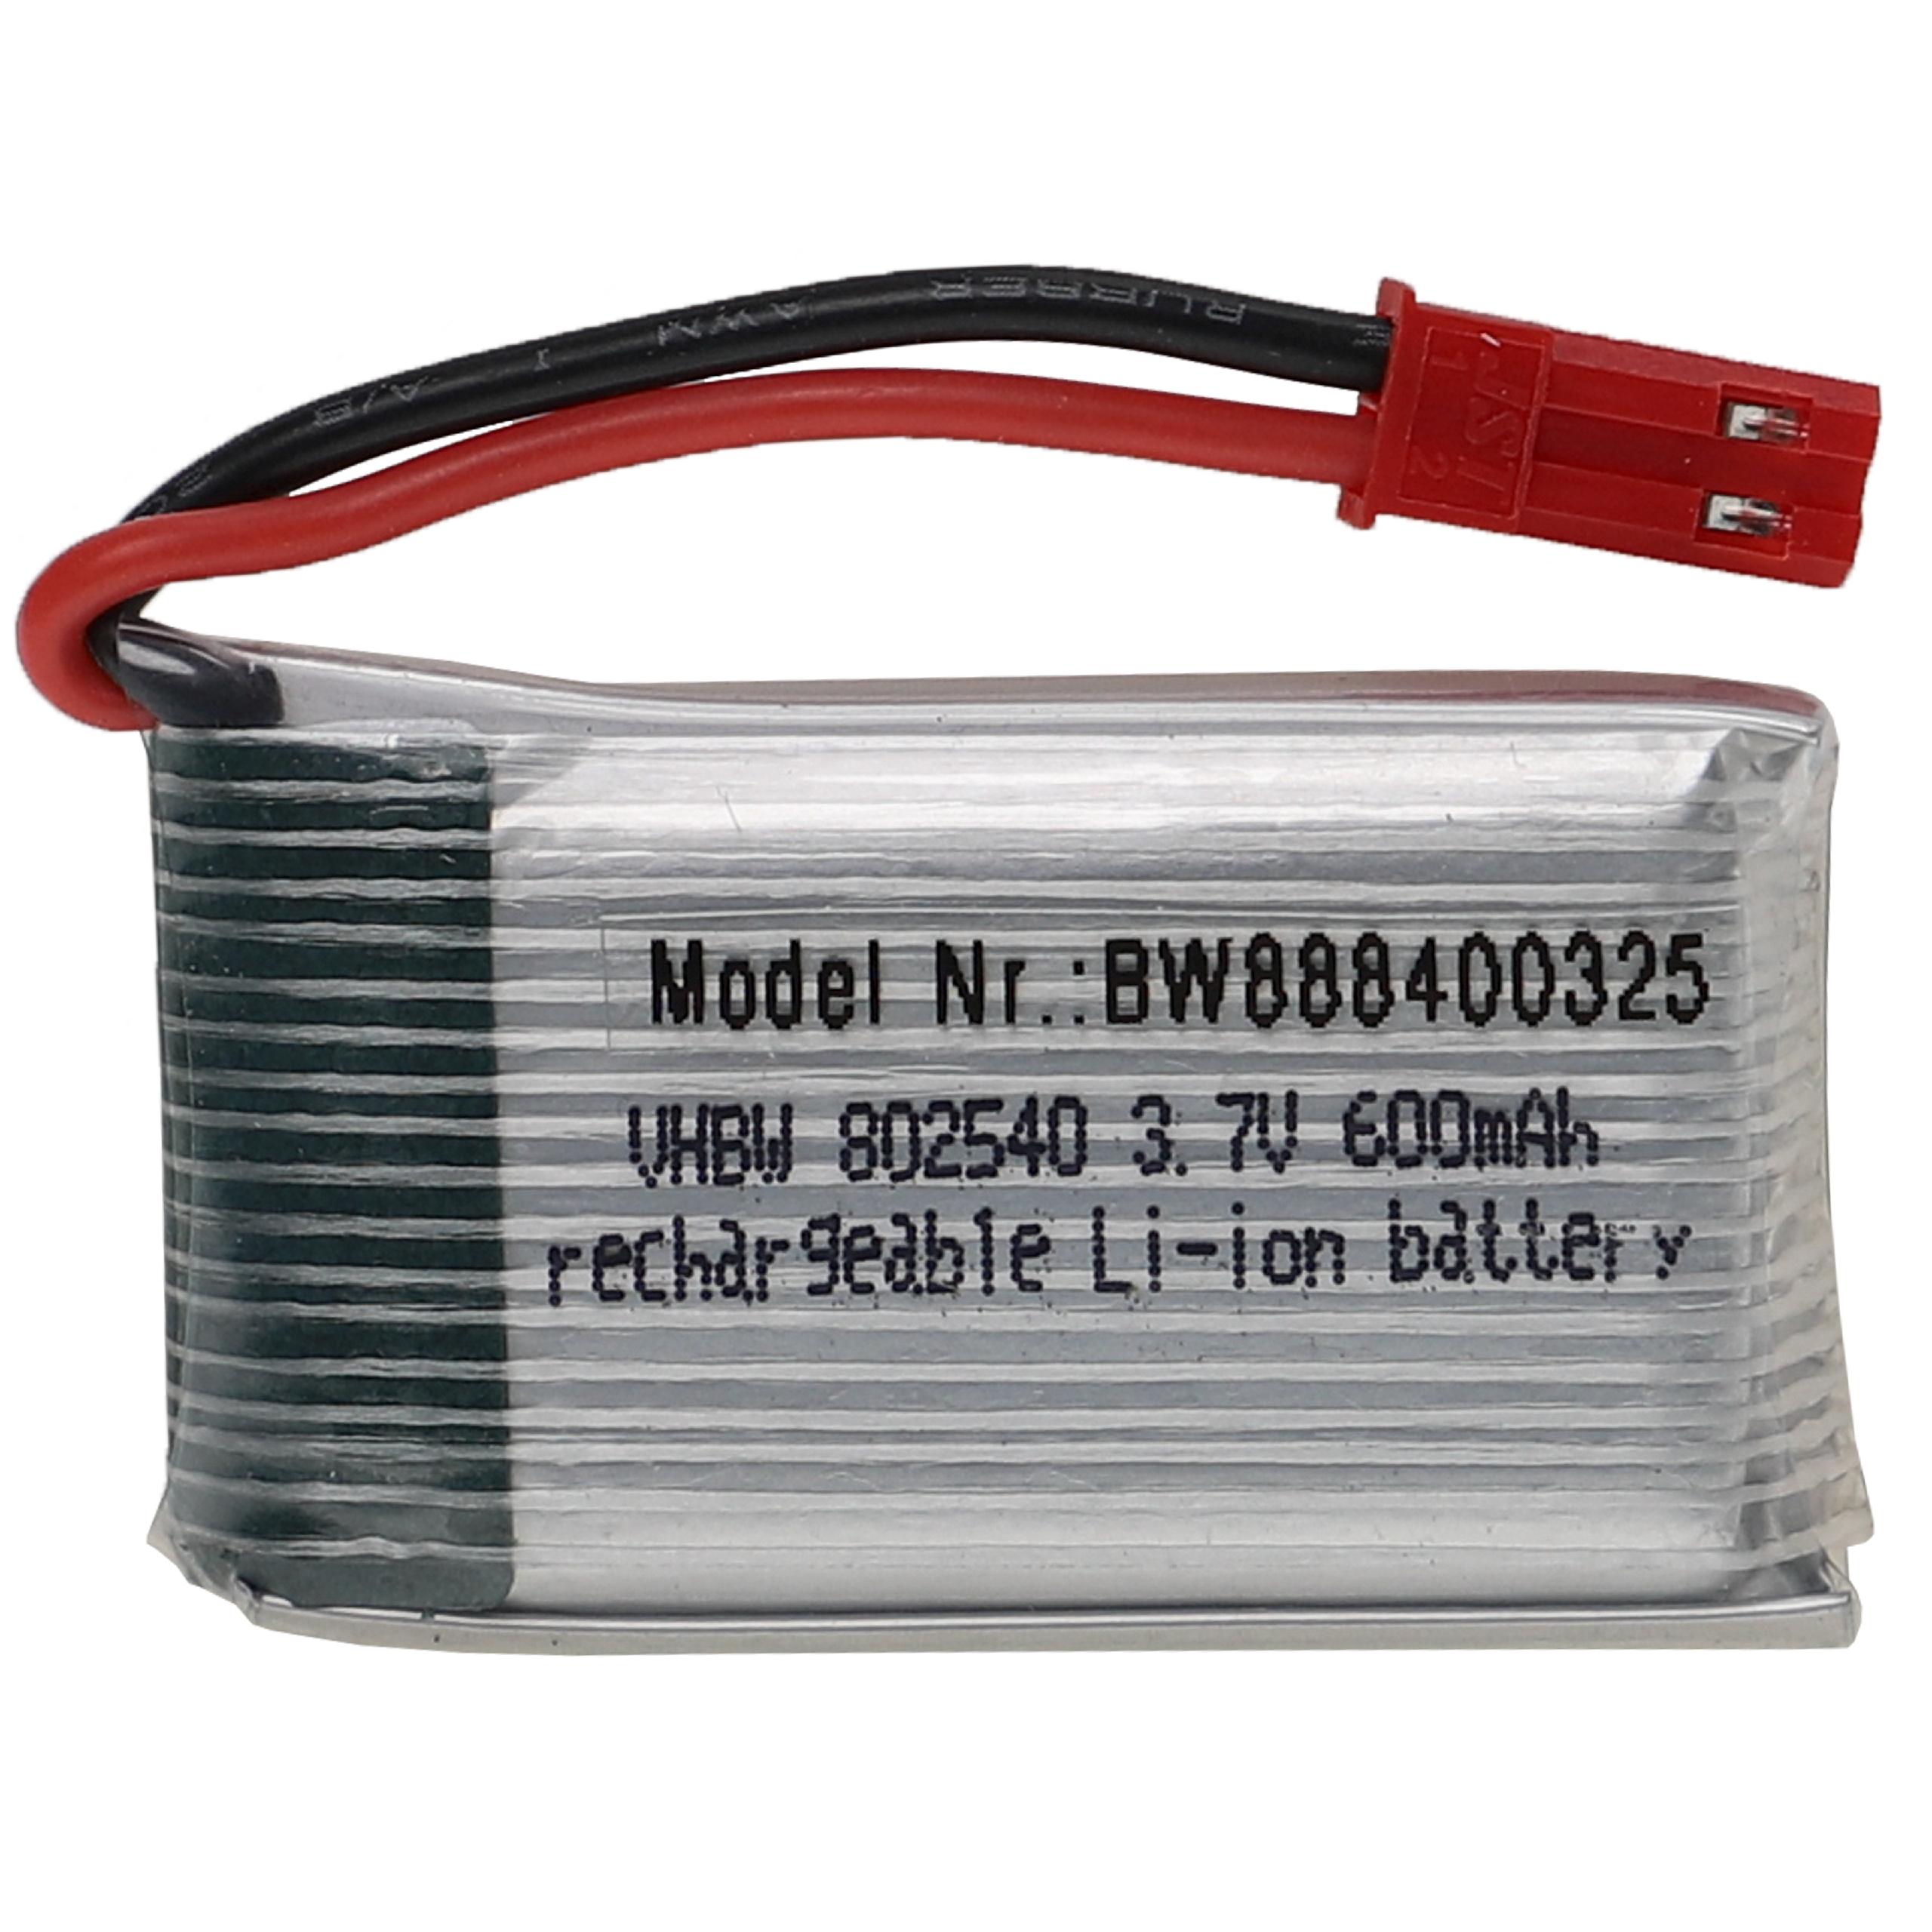 Batterie pour modèle radio-télécommandé - 600mAh 3,7V Li-polymère, BEC